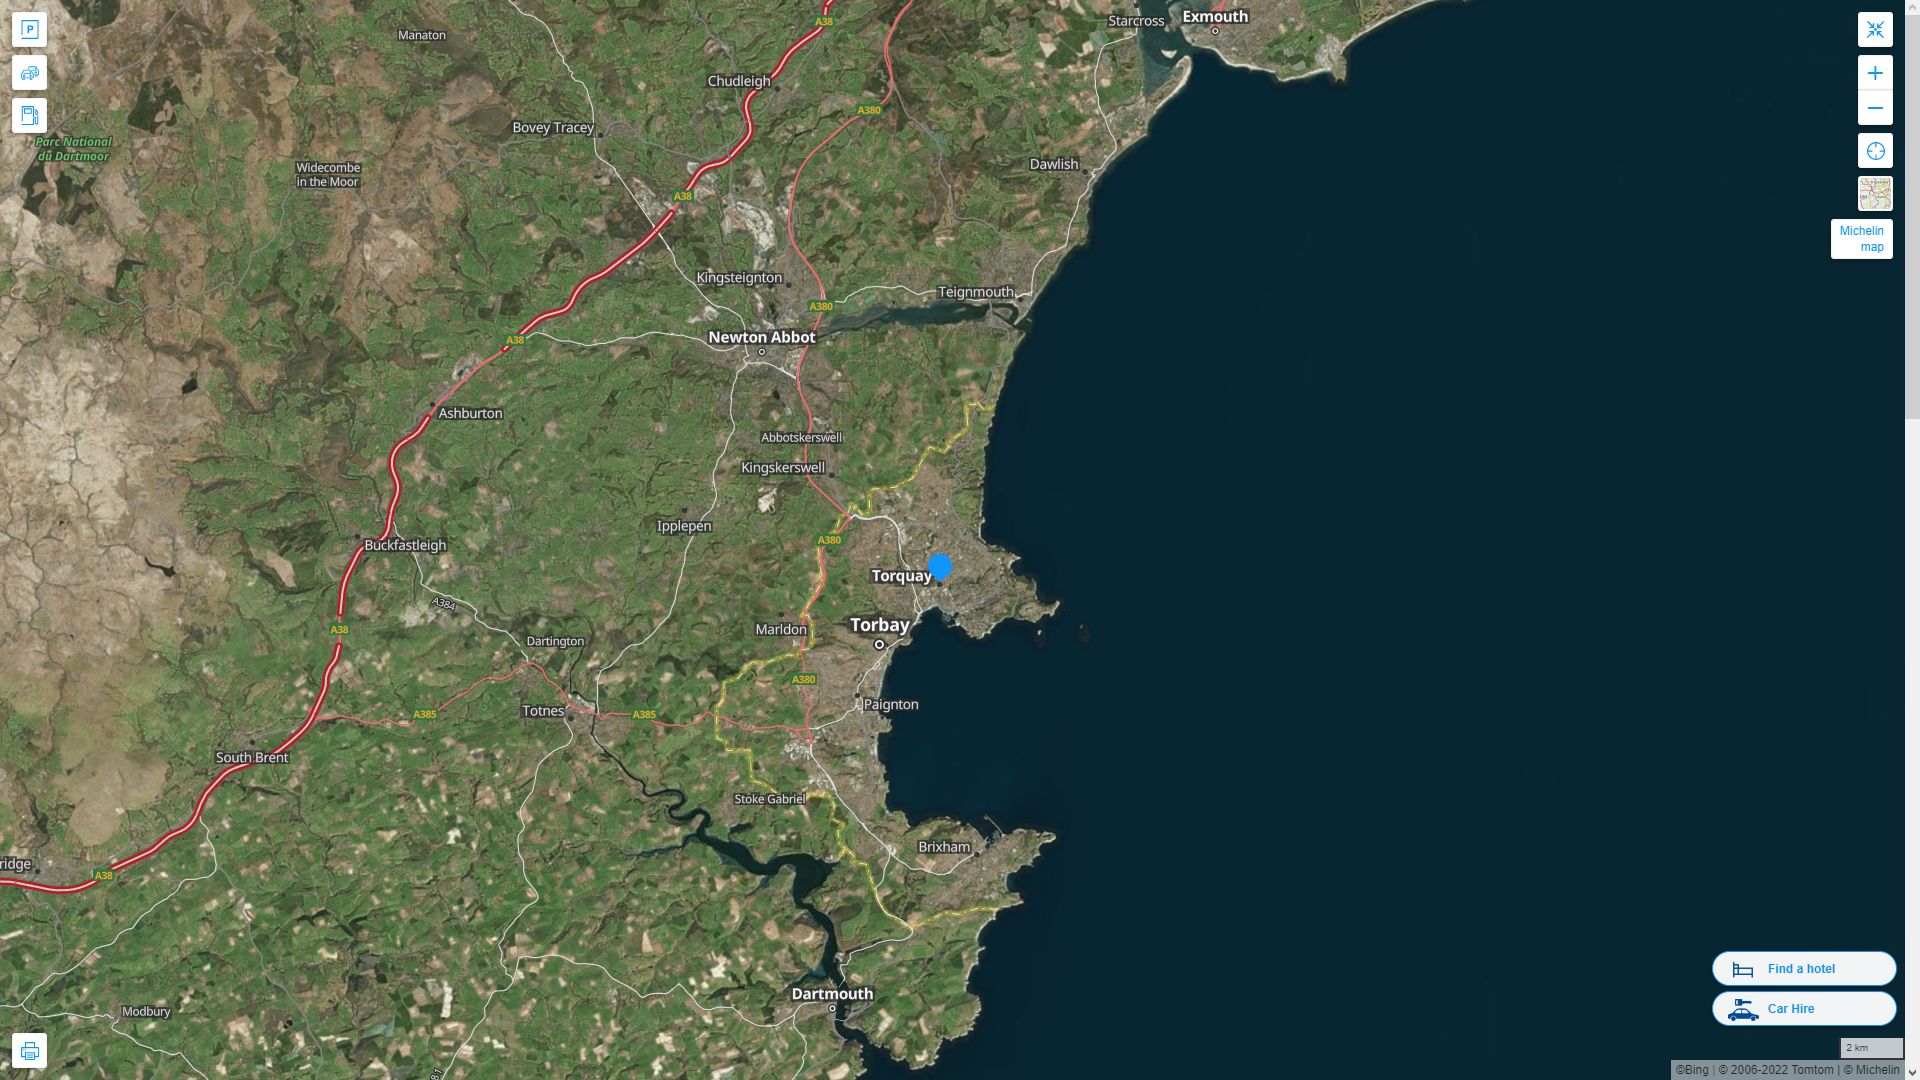 Torquay Royaume Uni Autoroute et carte routiere avec vue satellite